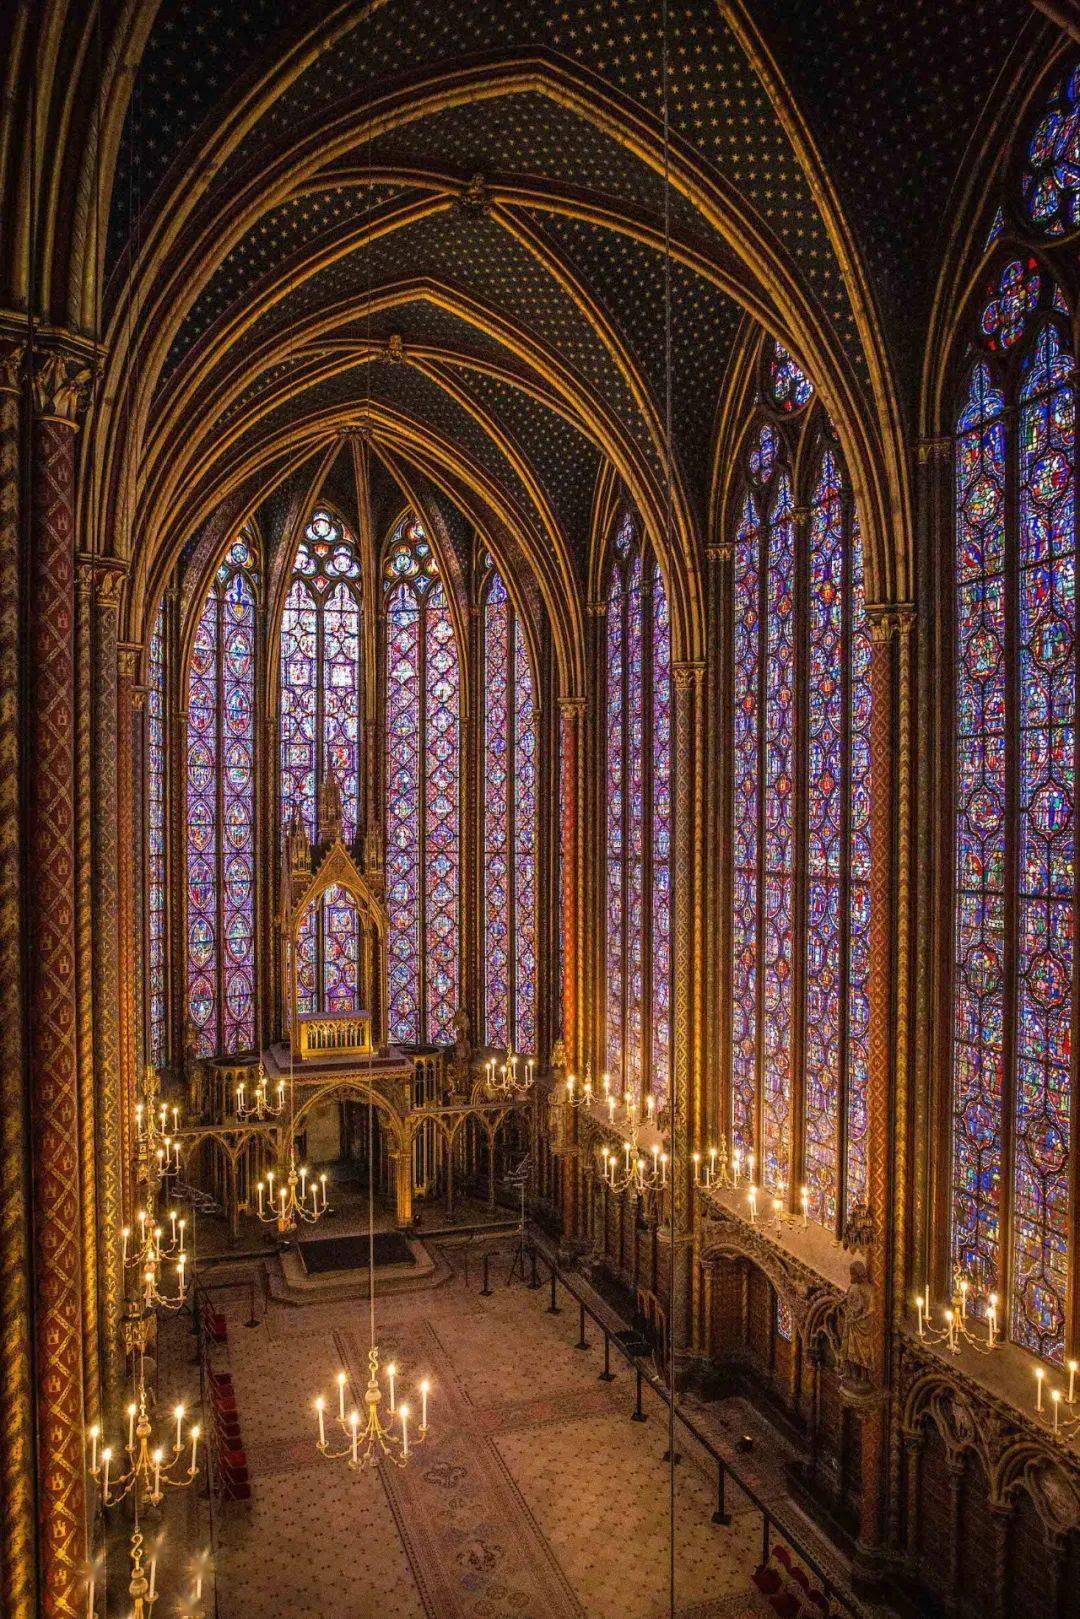 夏特尔教堂彩色玻璃窗图片